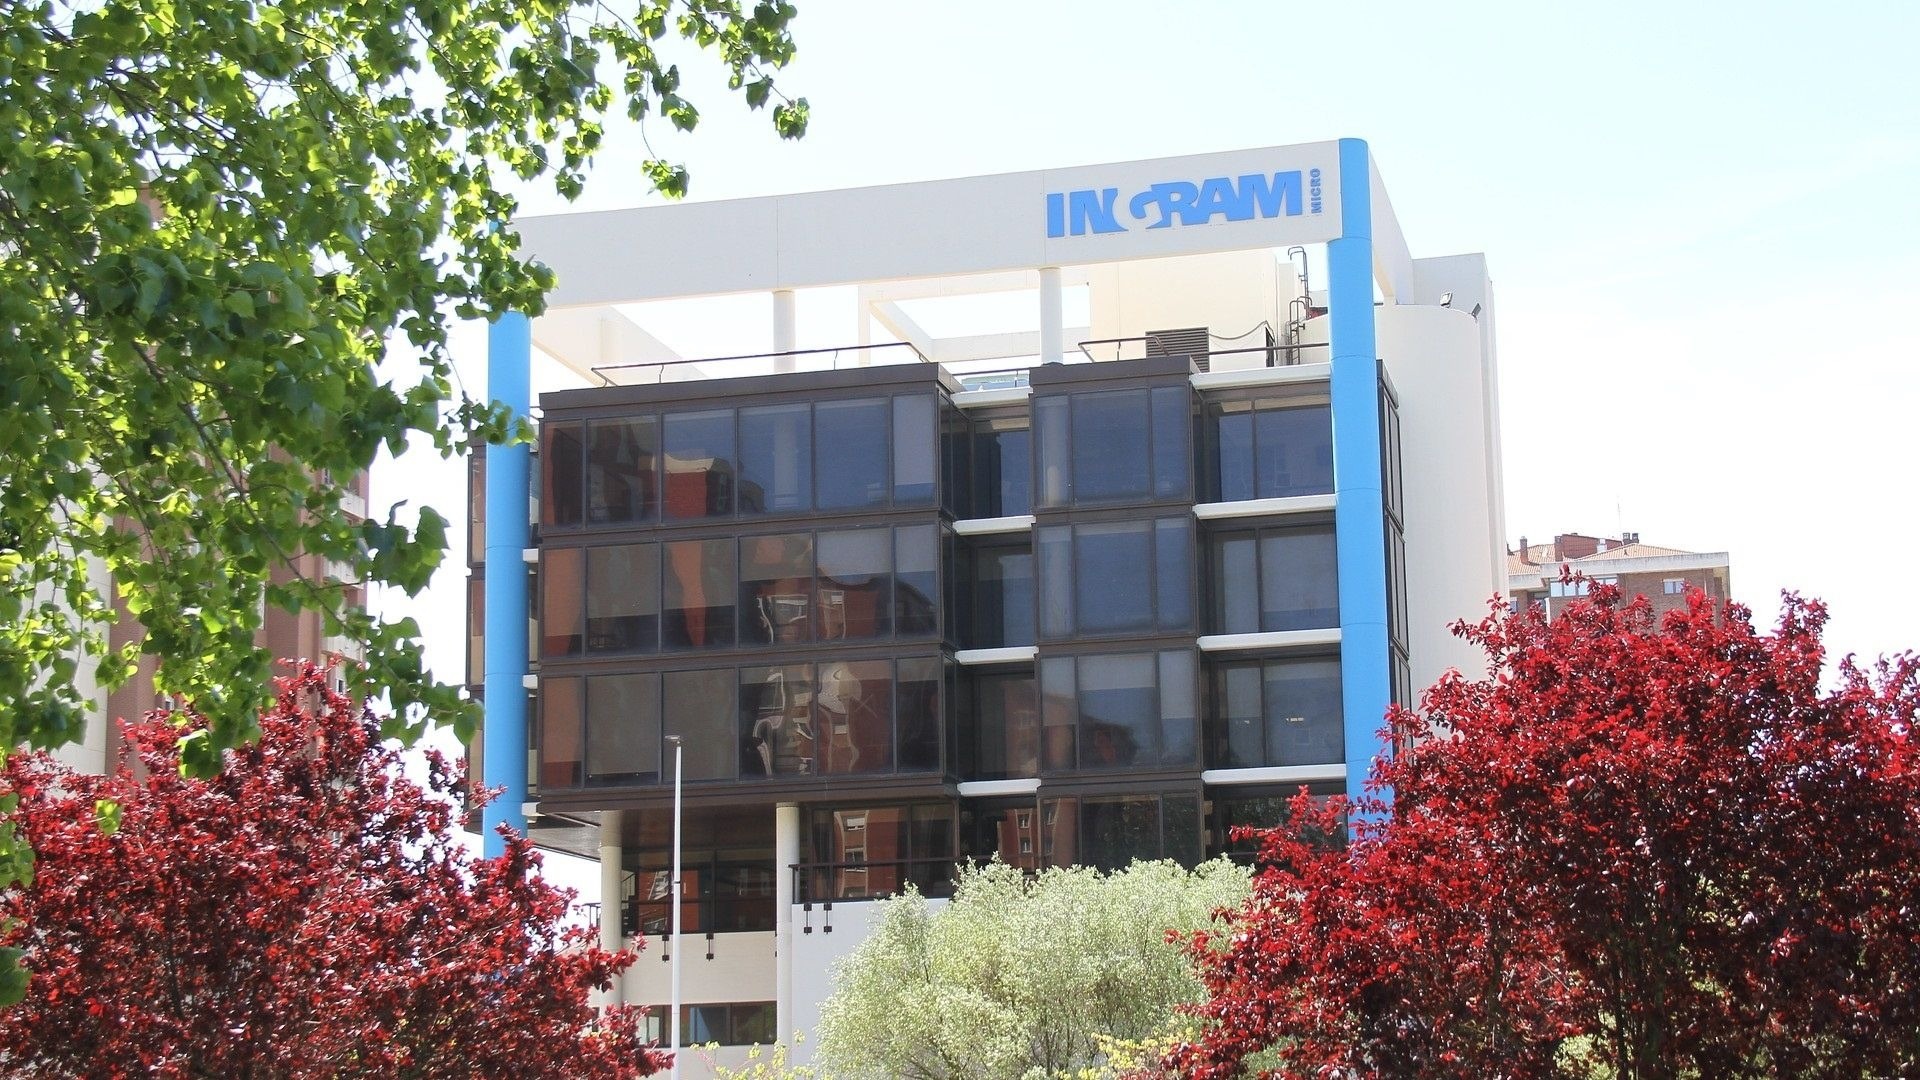 Oficinas Ingram Micro en Santander